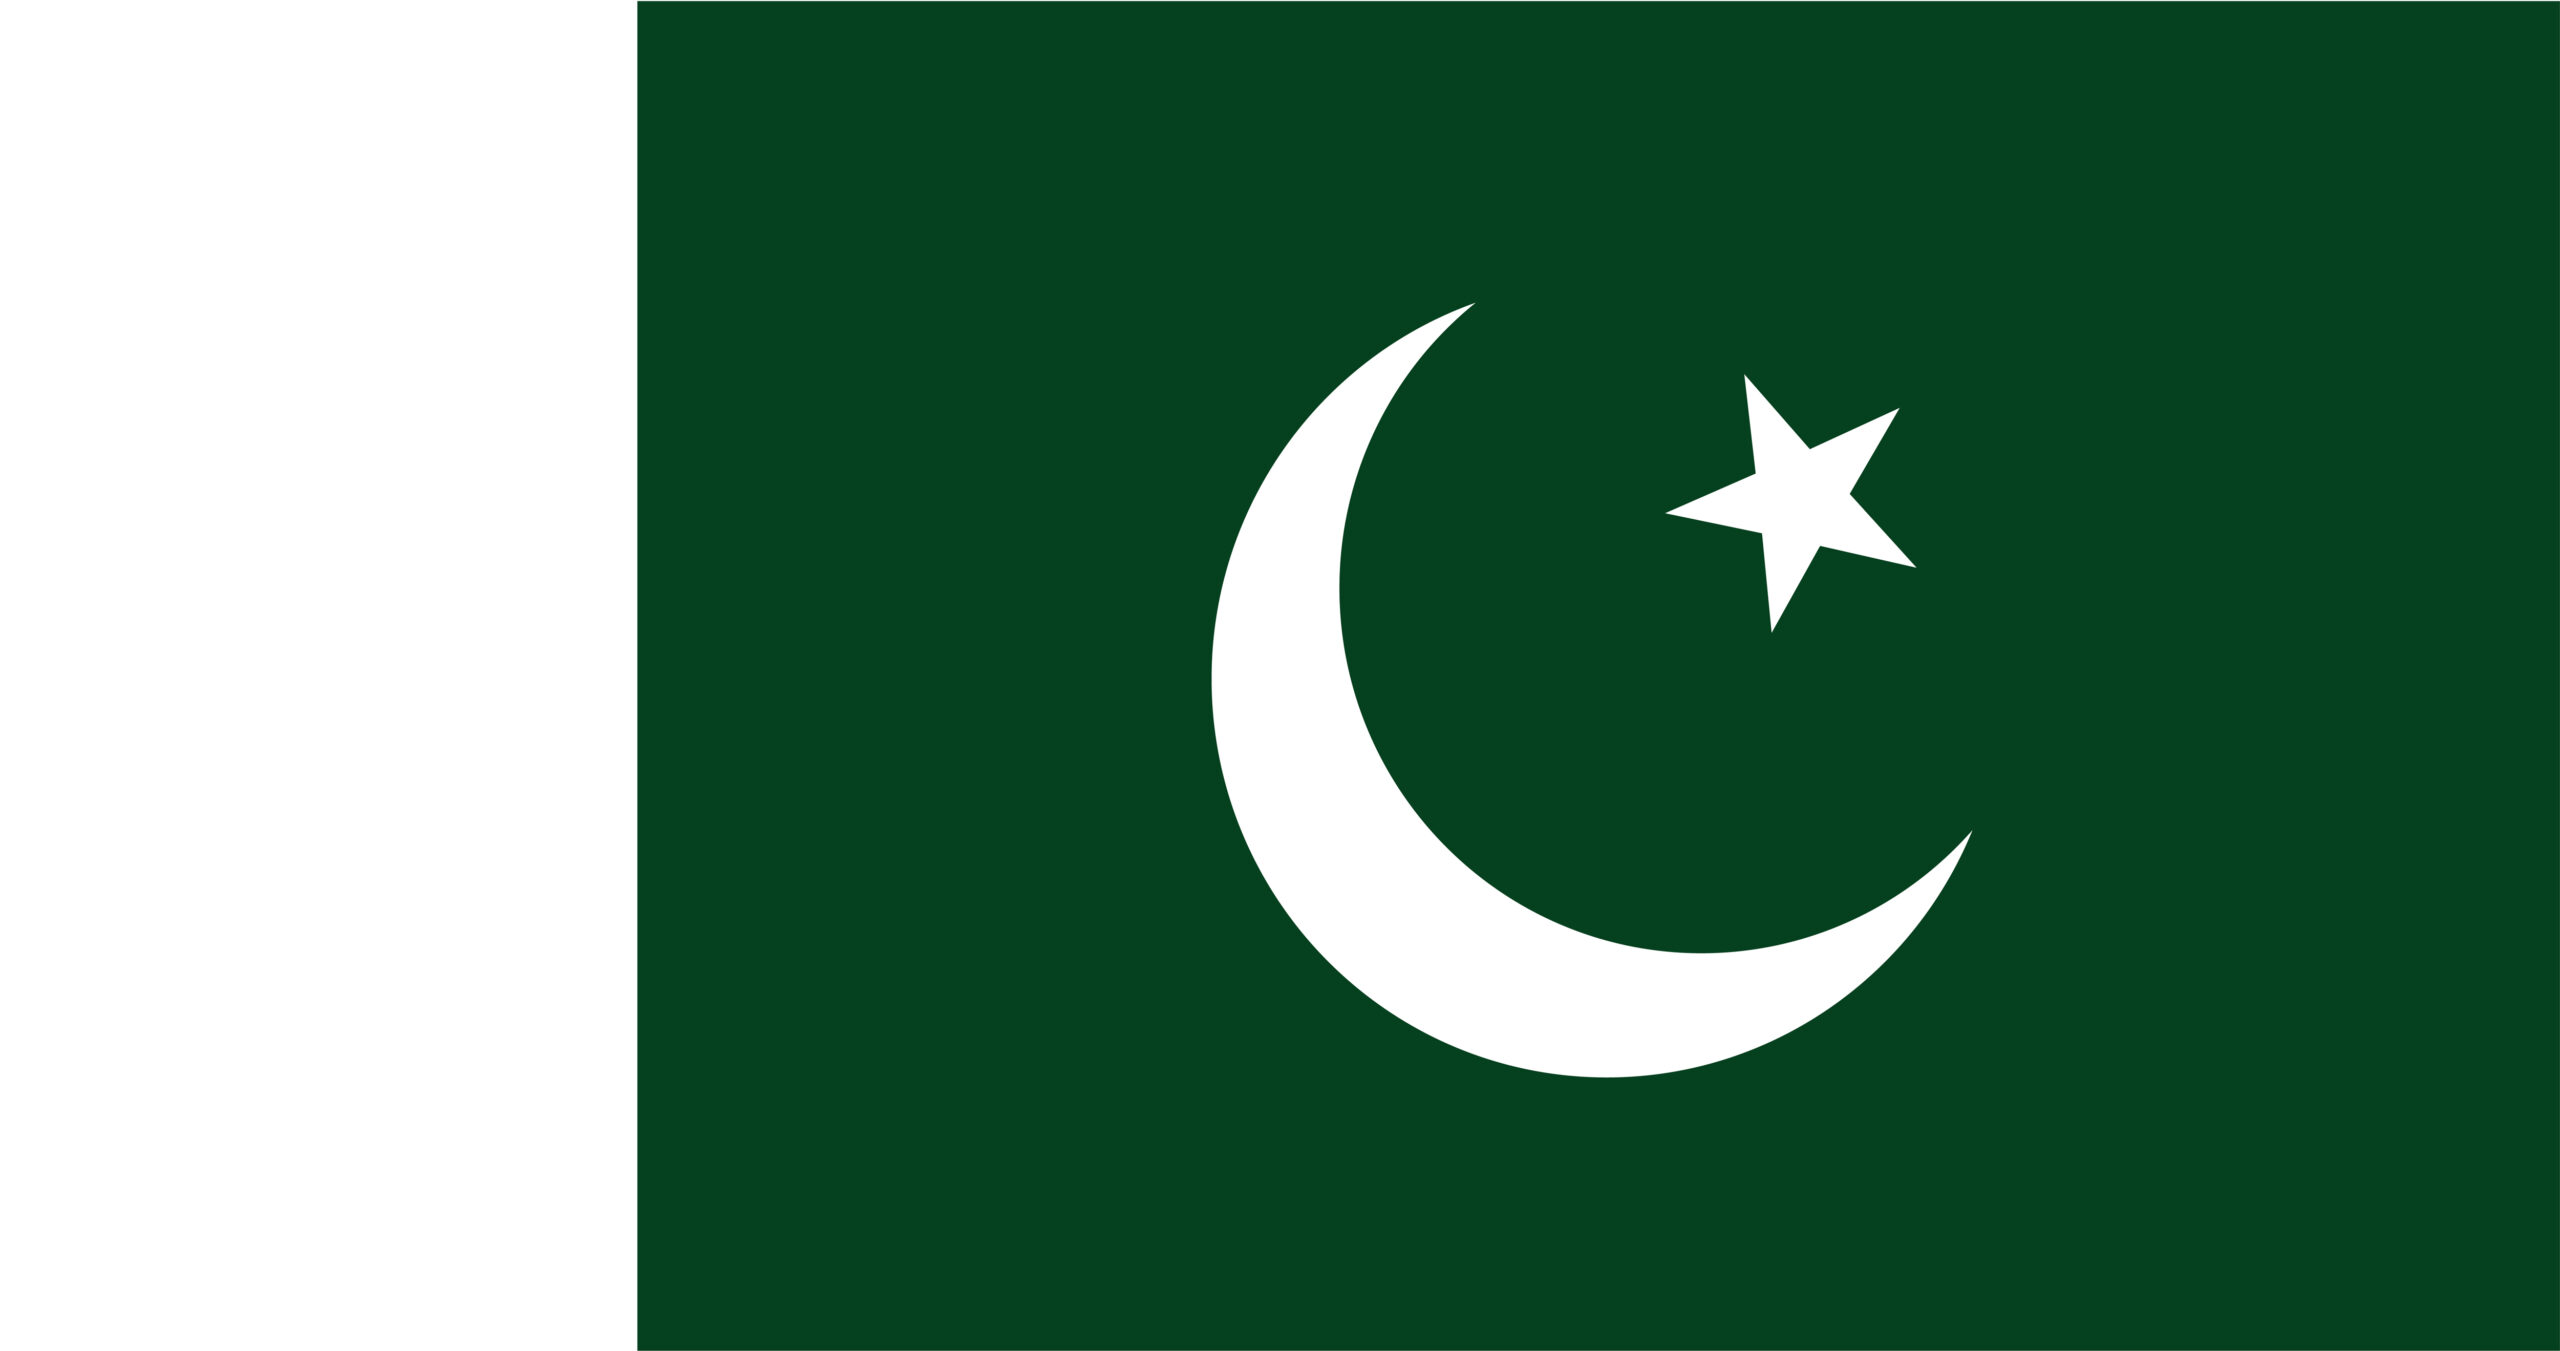 Pakistan Flag - AssortTech